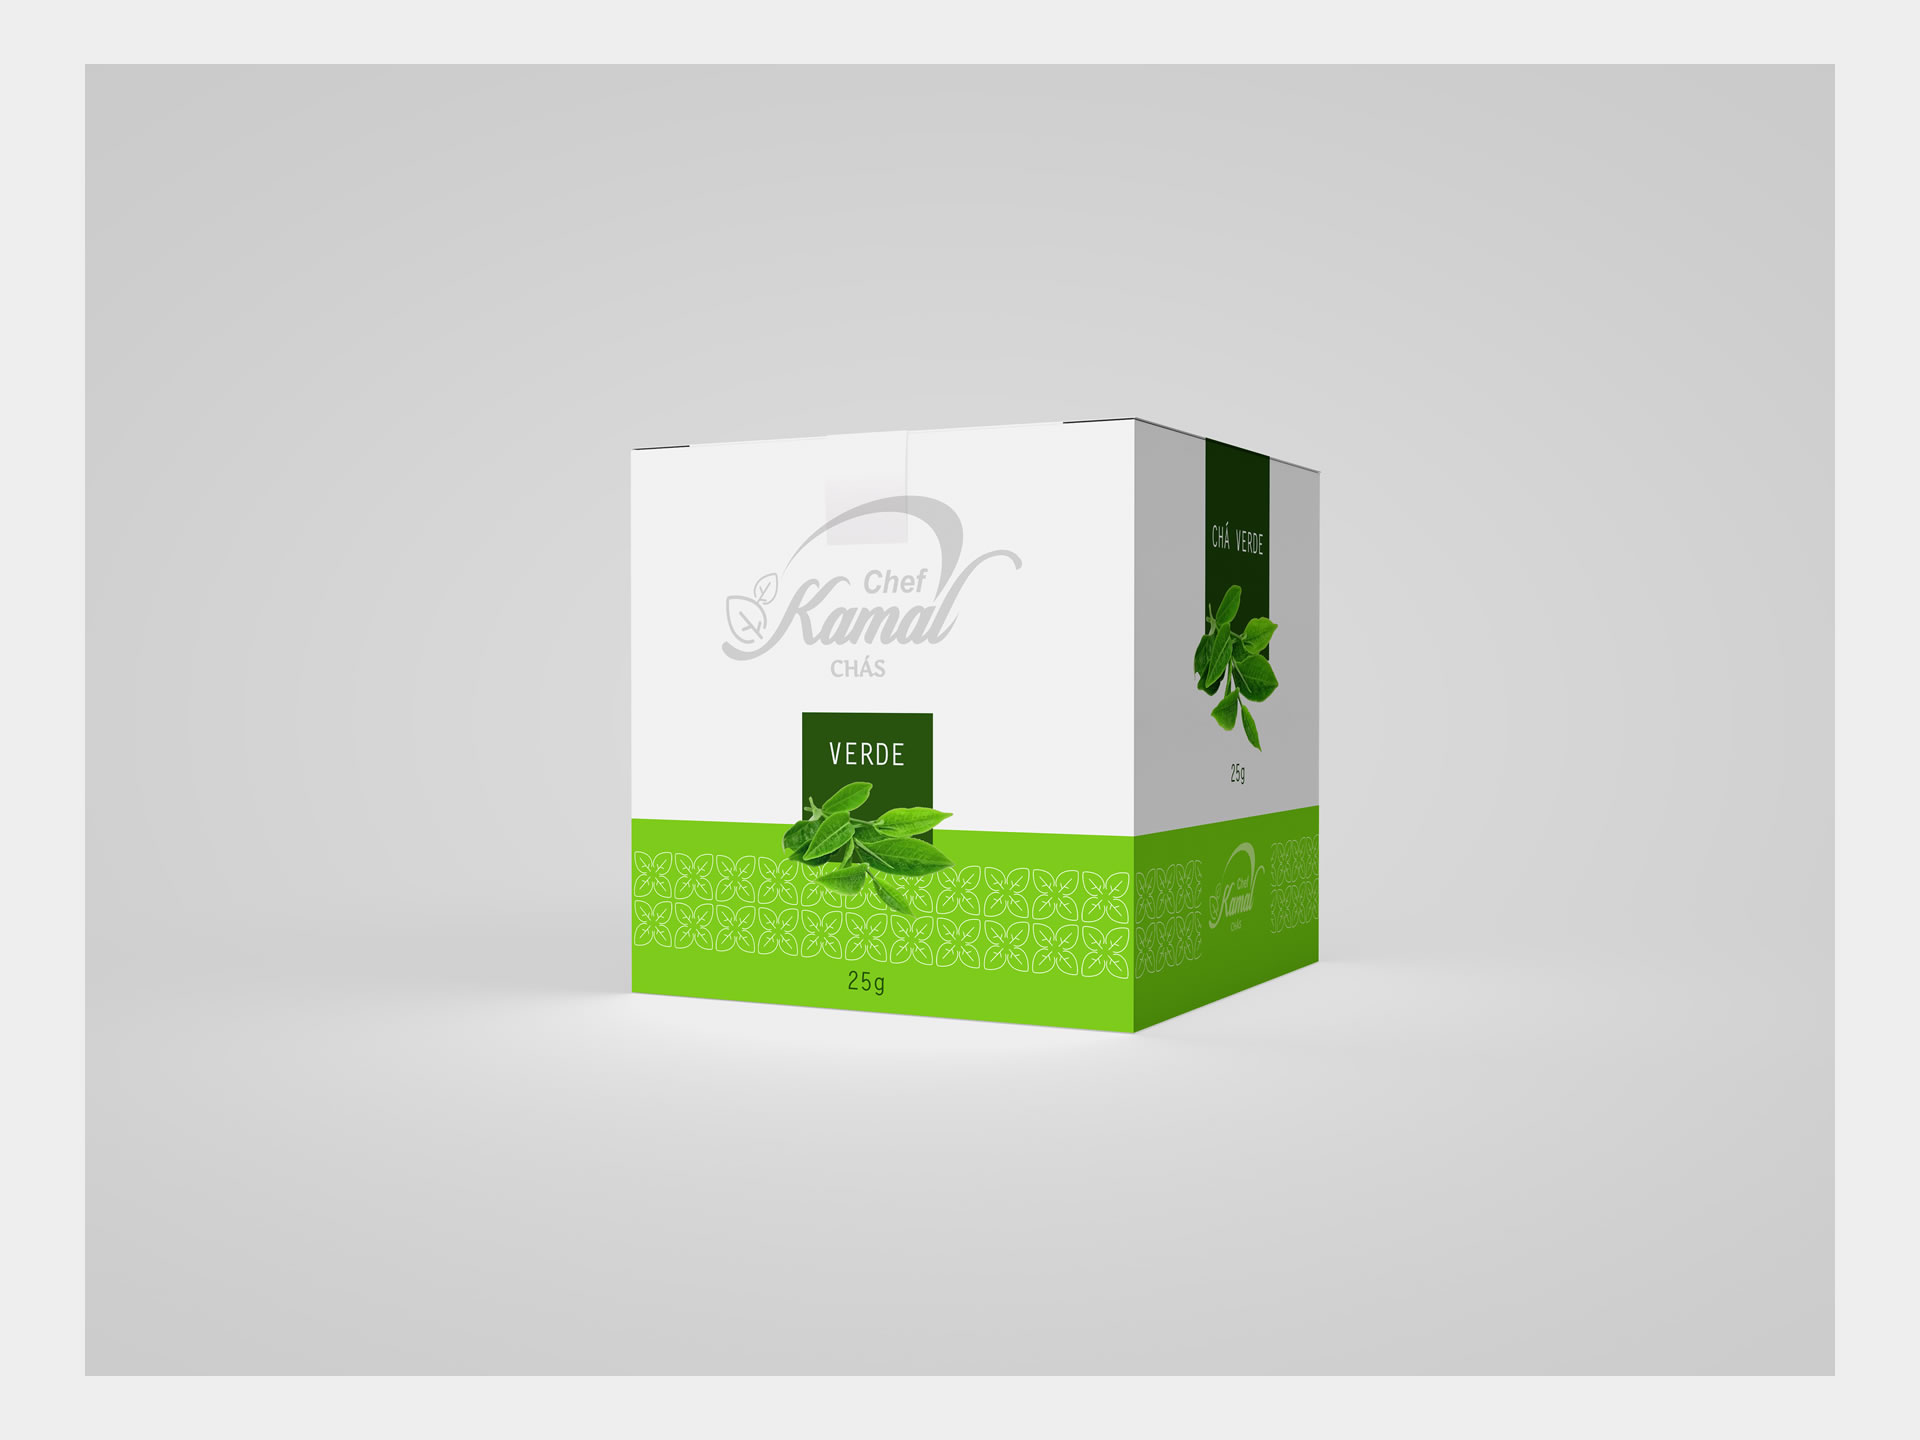 Portfolio - CriativaPlus Design Studio - Criação - Web Design - Design Gráfico